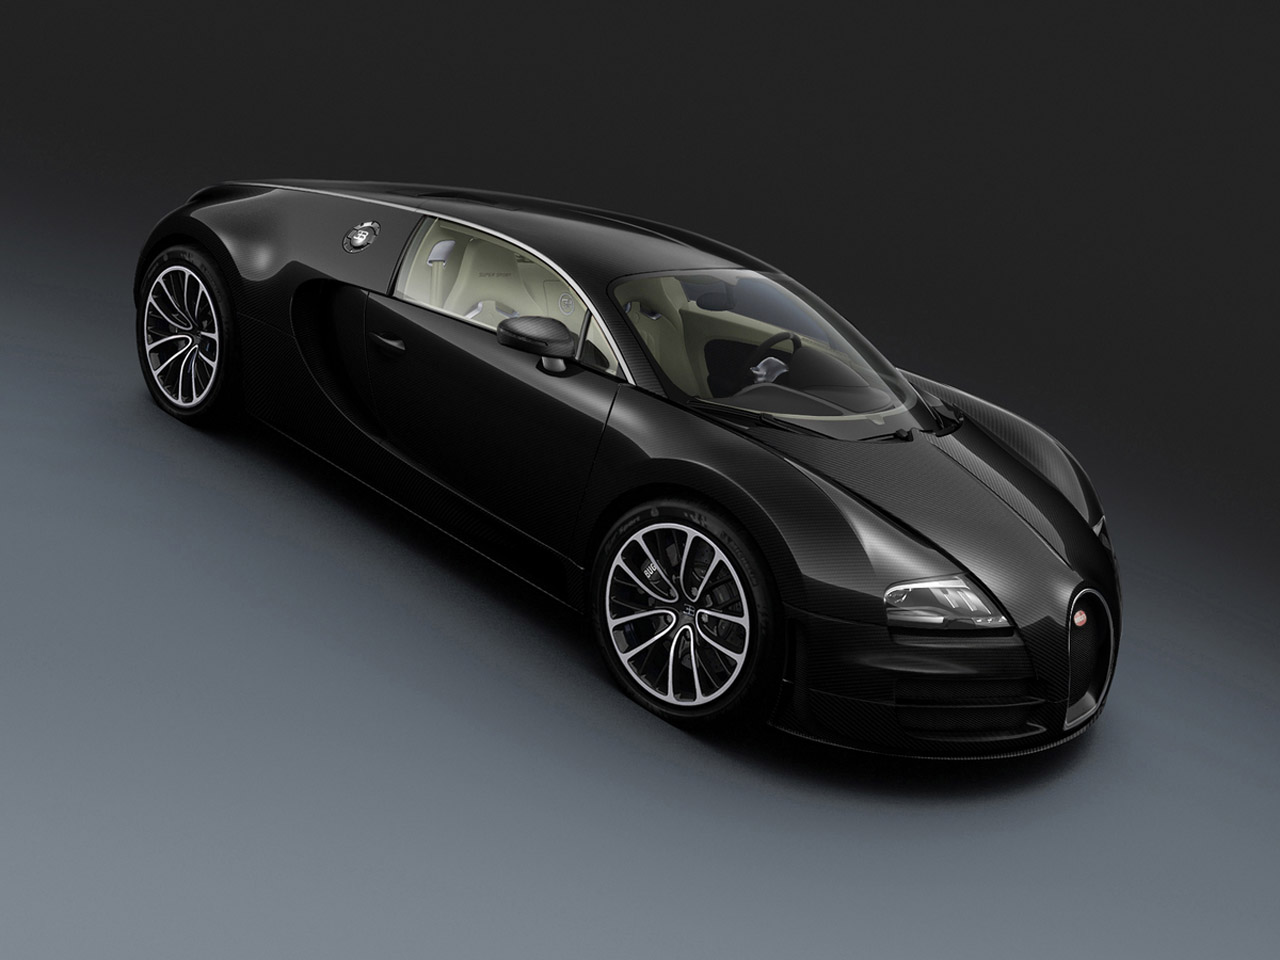 Salón de Shanghái 2011: Bugatti se saca de la manga otra versión especial